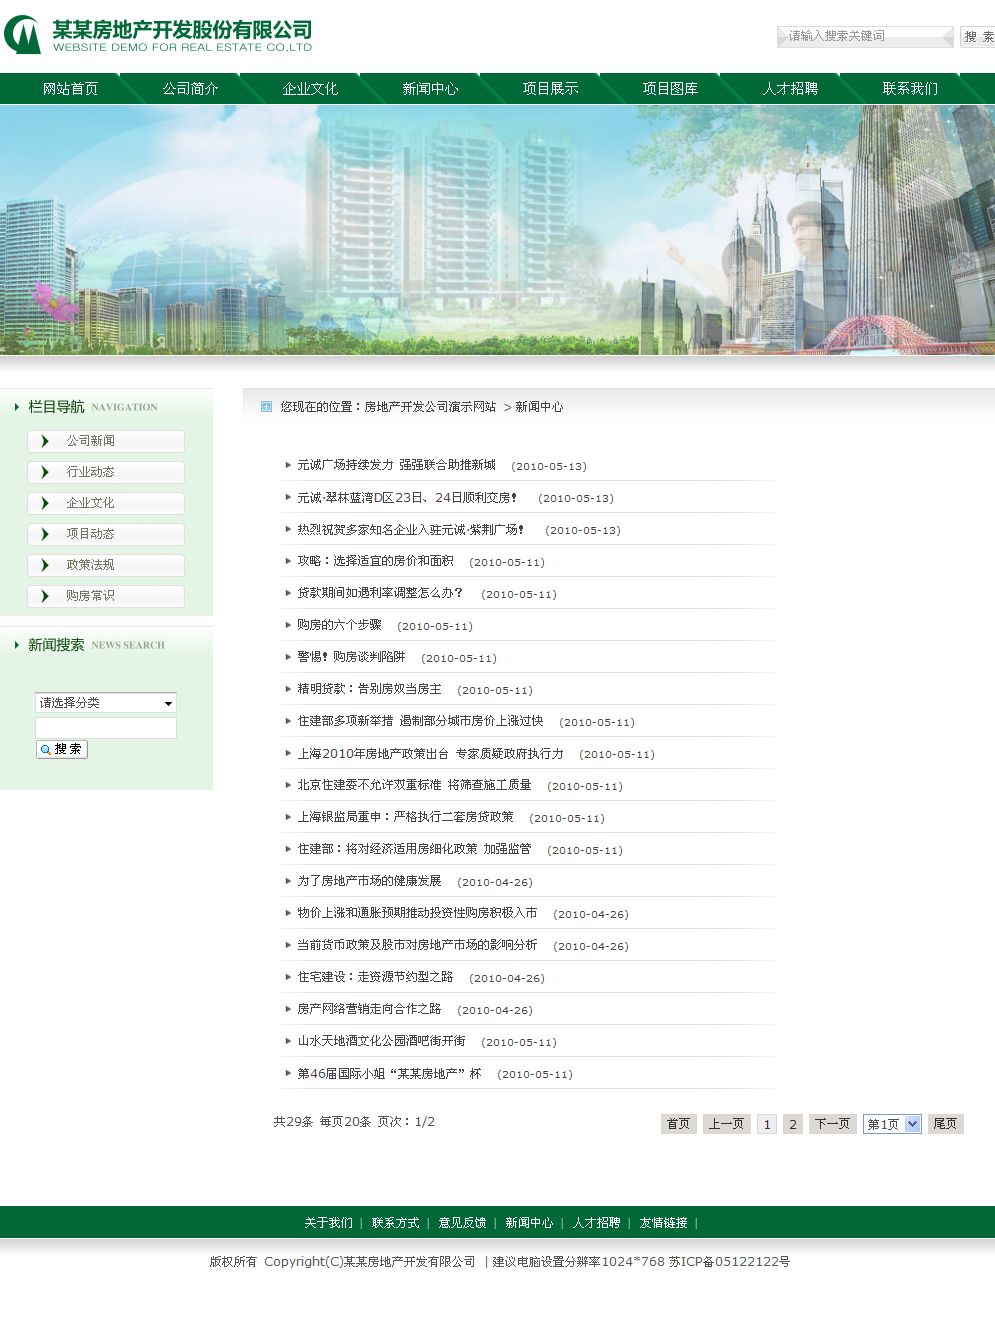 房地产开发公司网站新闻列表页